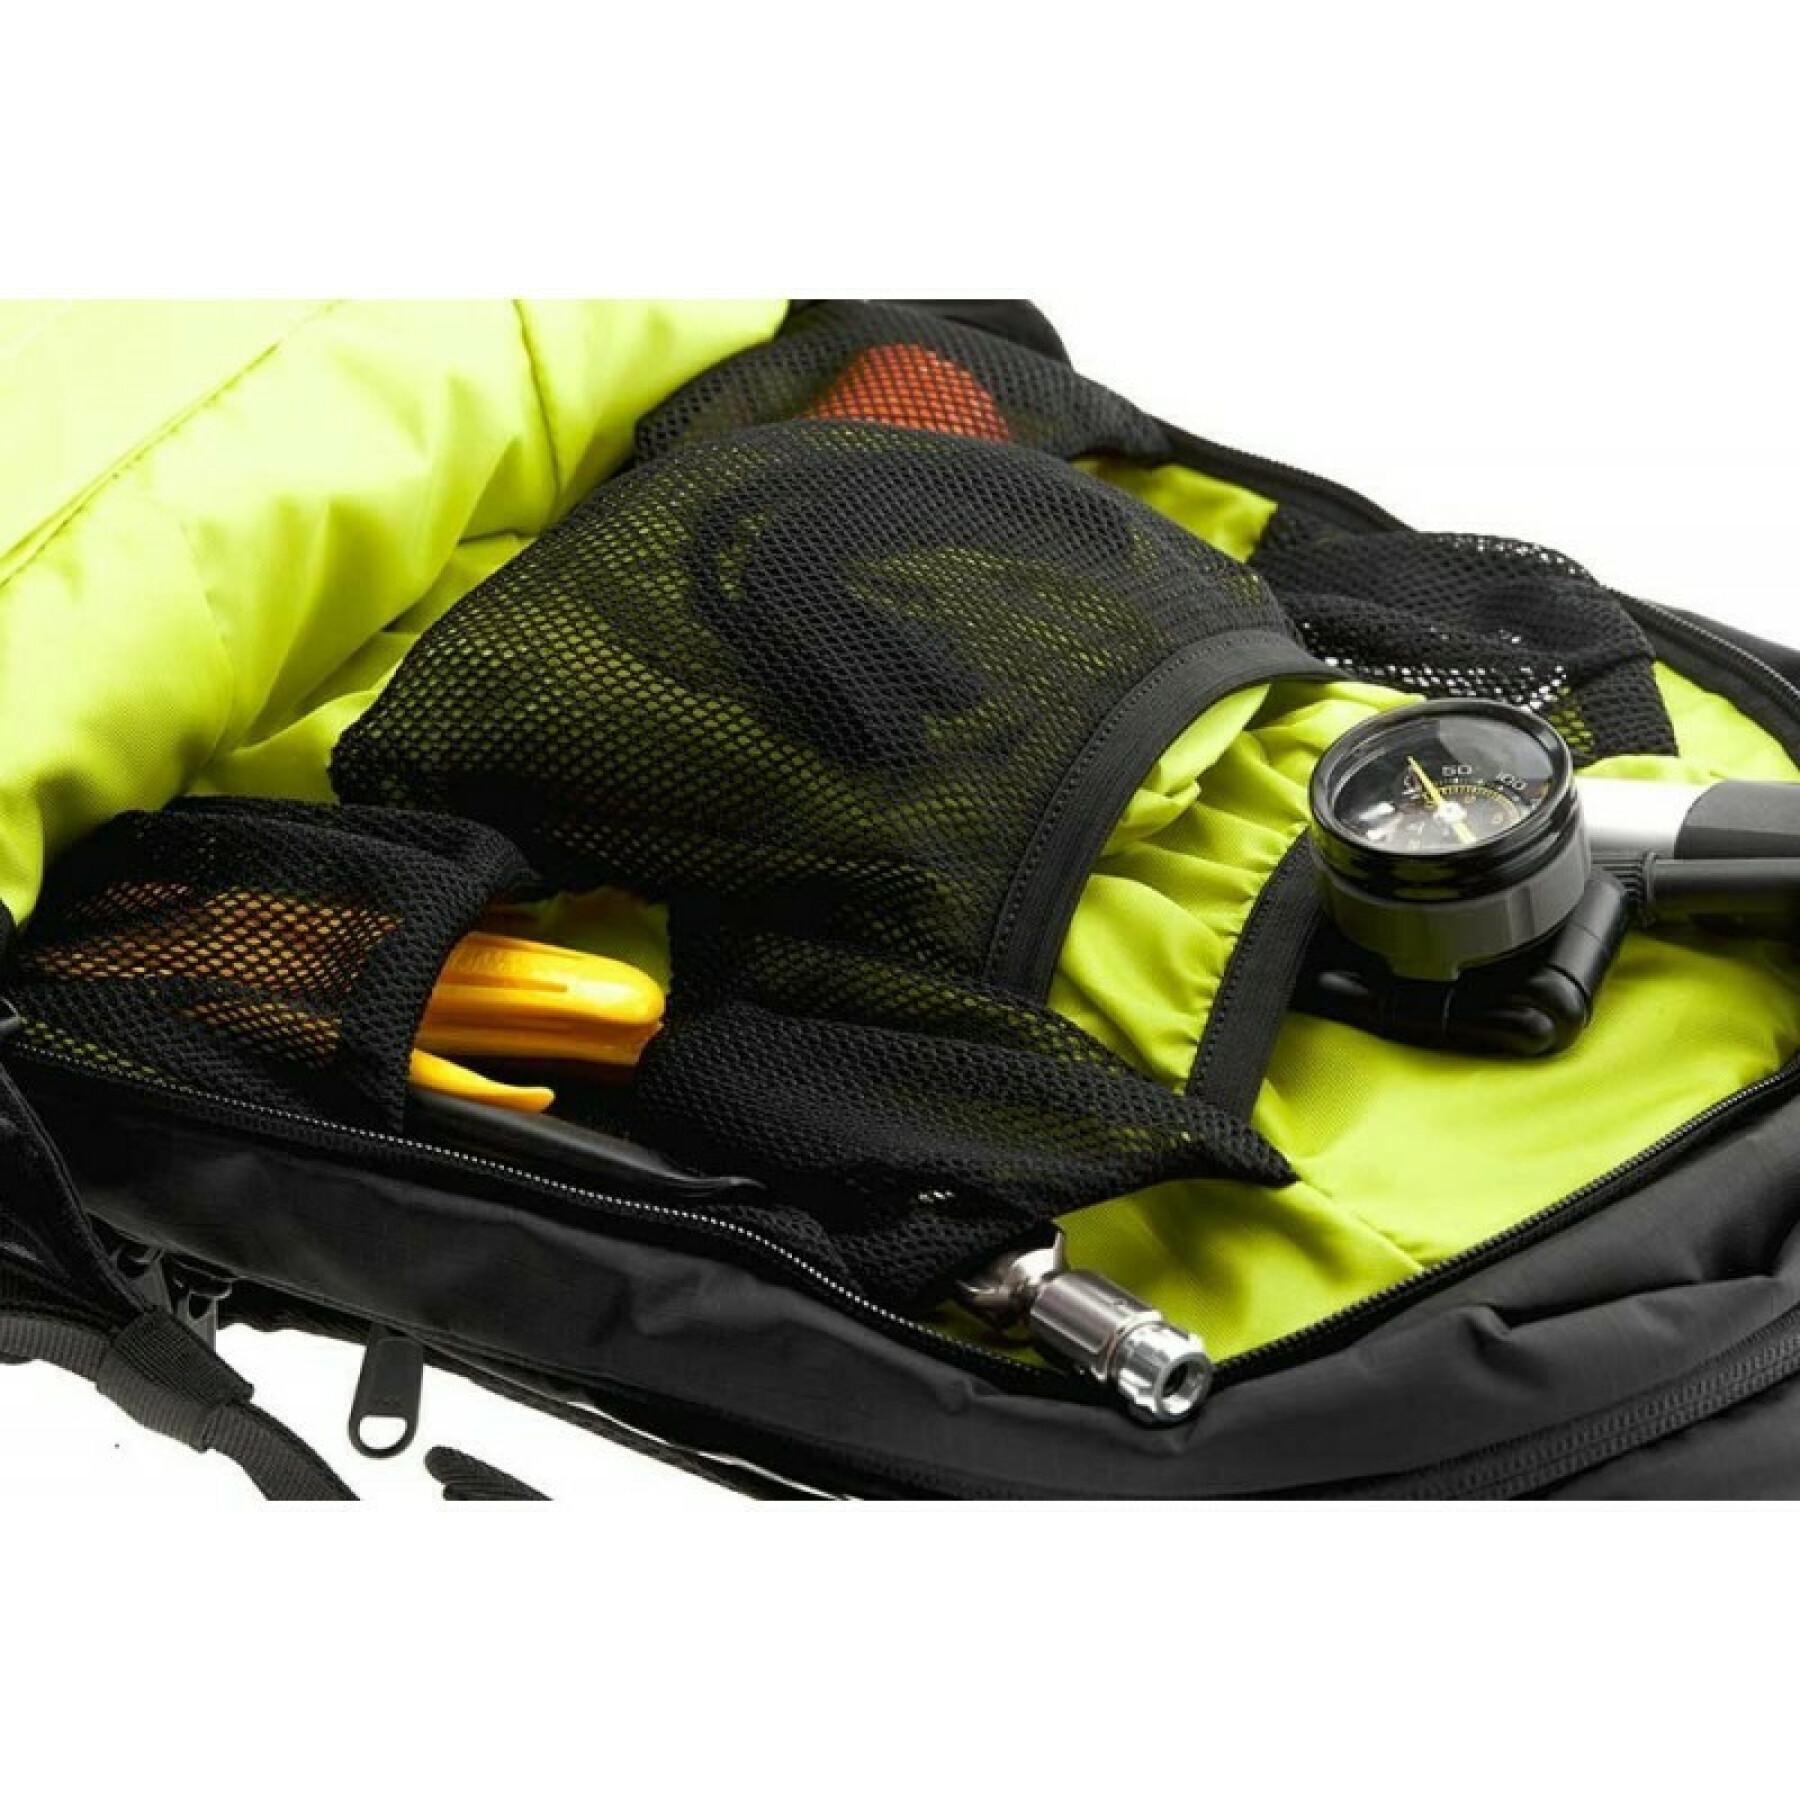 Backpack Ergon ba2 e protect